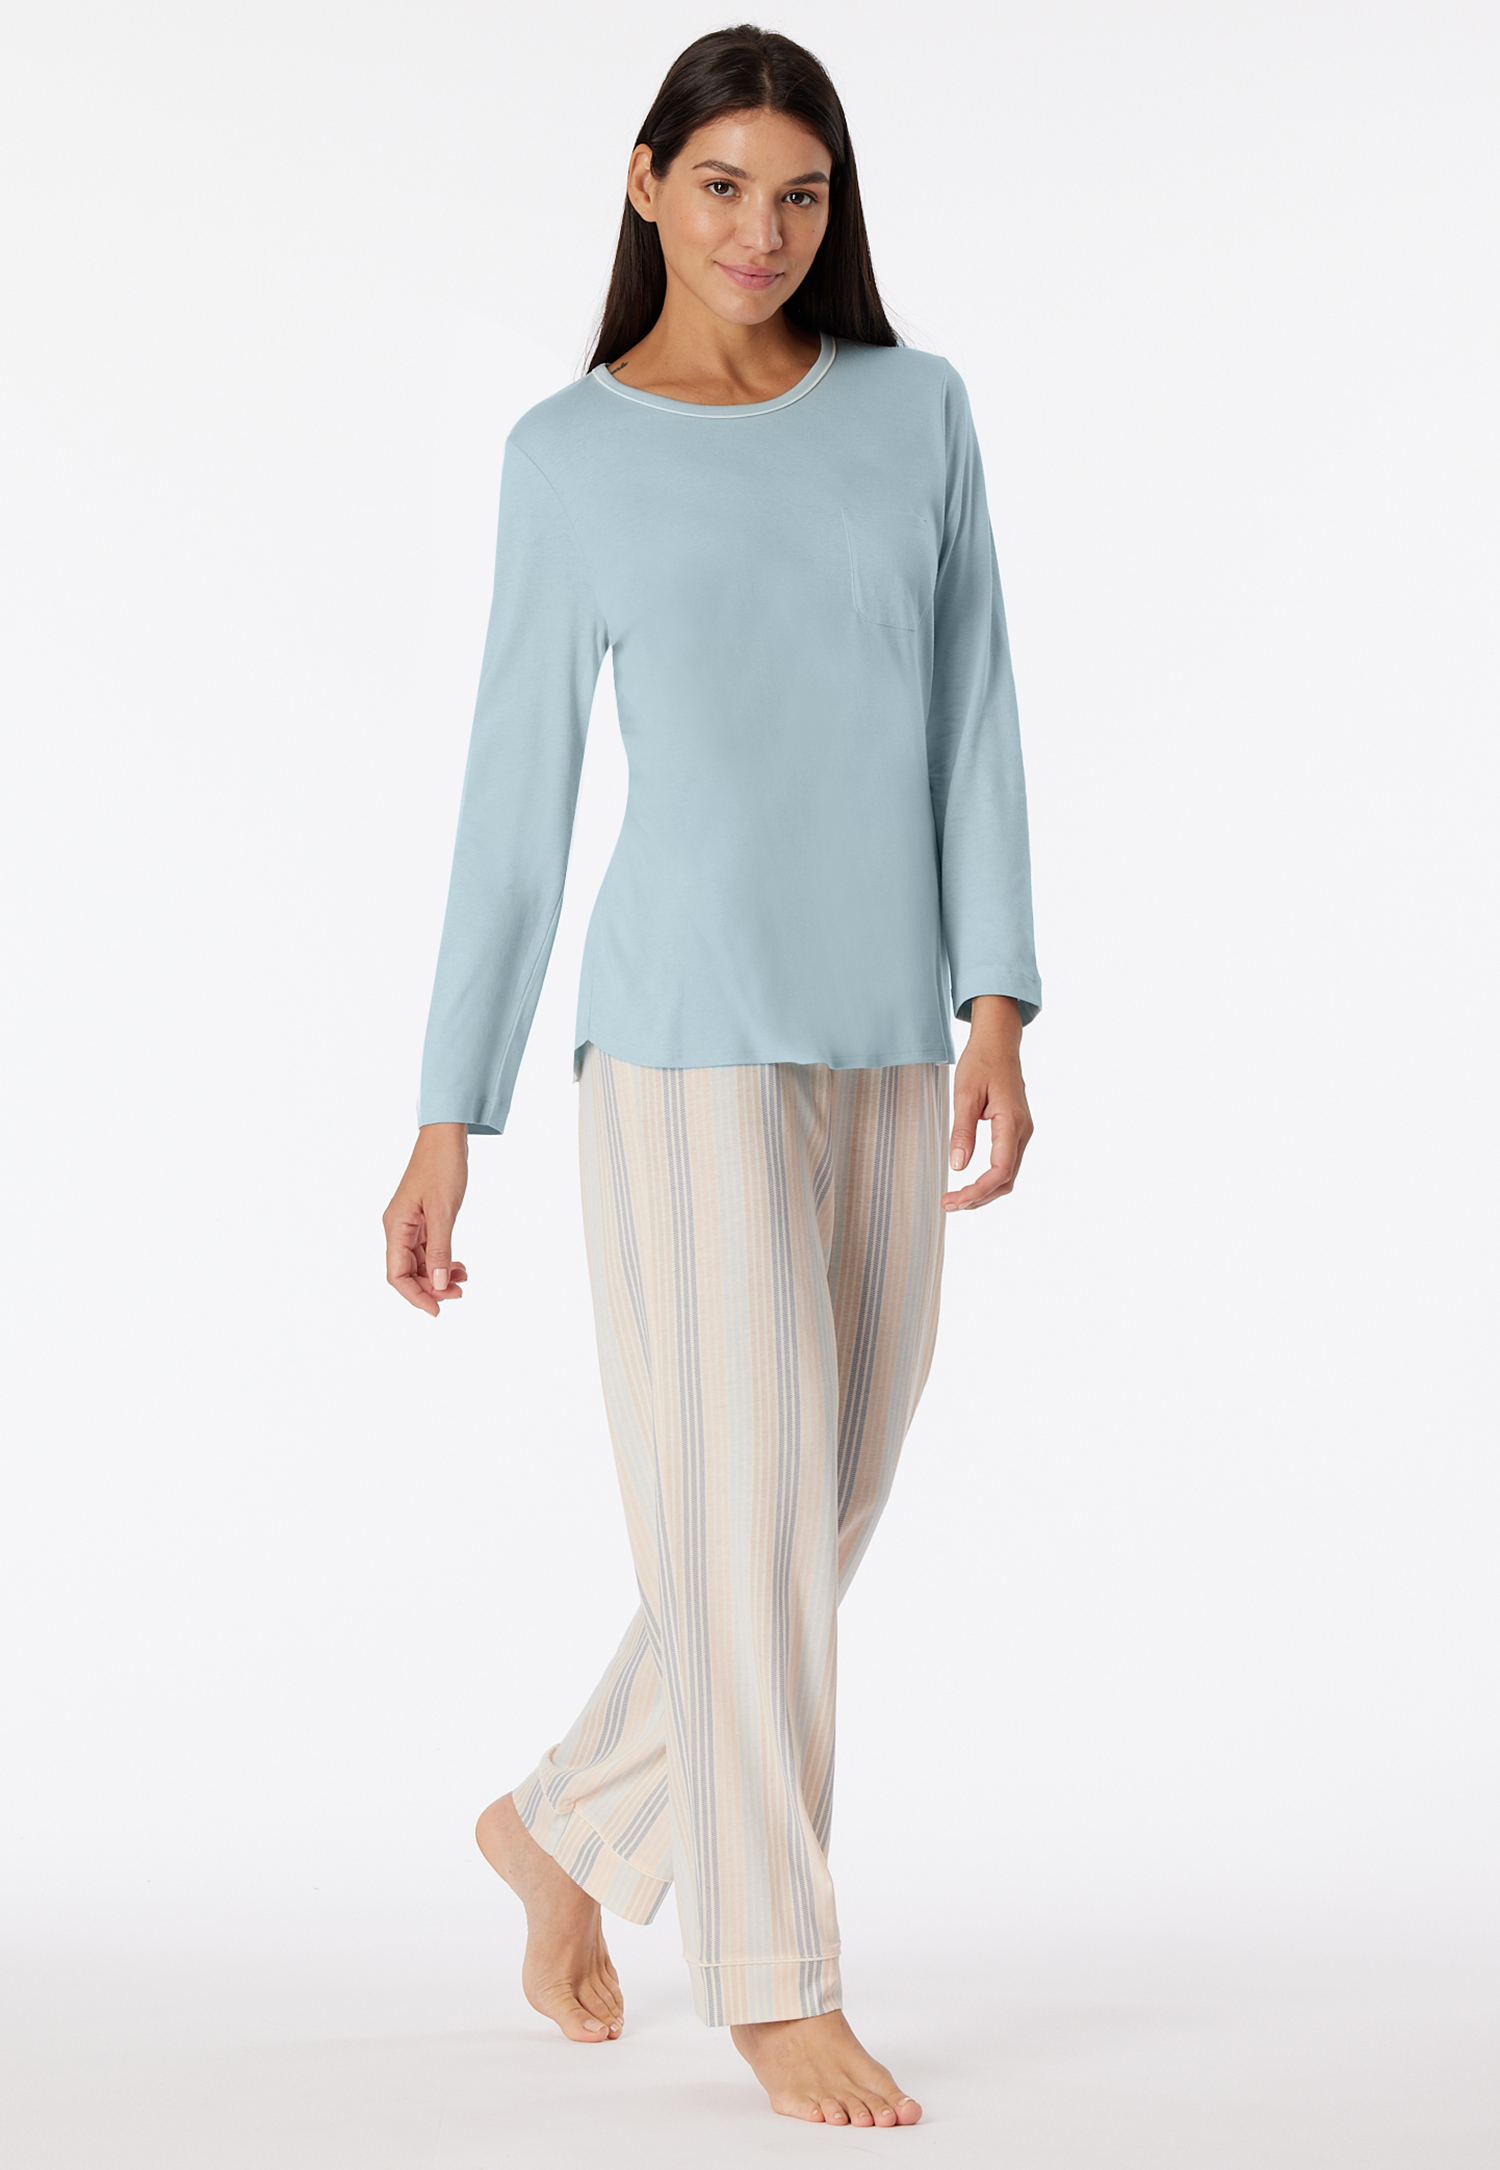 Schlafanzug lang bluebird - Comfort Nightwear 38 von Schiesser